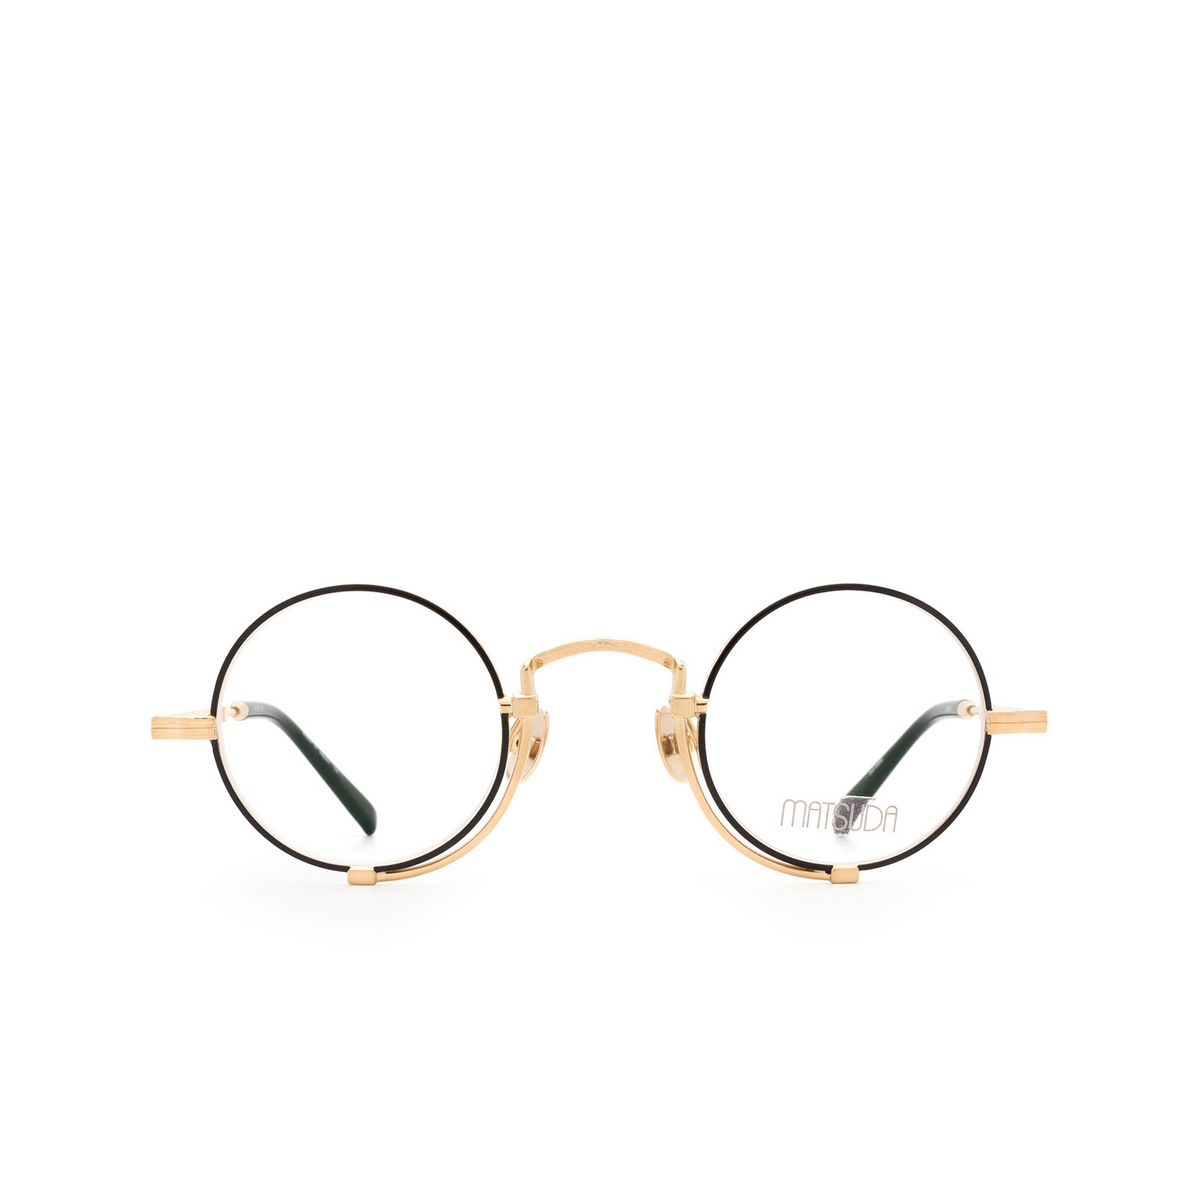 Matsuda® Round Eyeglasses: 10103H color Brushed Gold / Matte Black Bg-mbk - front view.